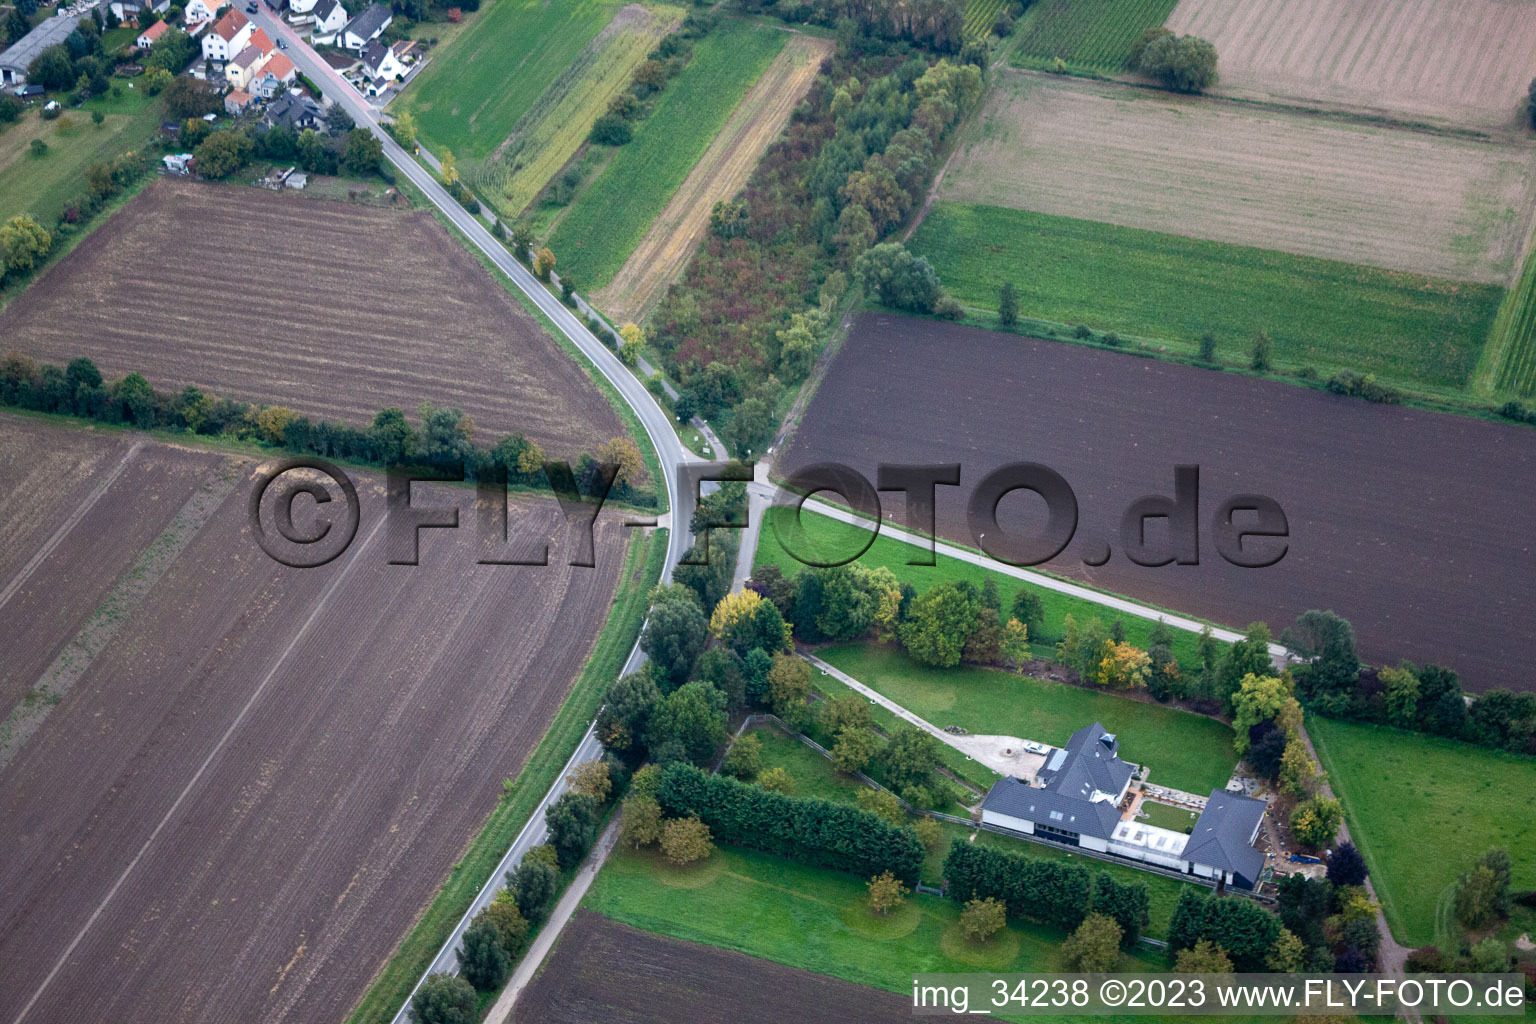 Gönnheim im Bundesland Rheinland-Pfalz, Deutschland von der Drohne aus gesehen